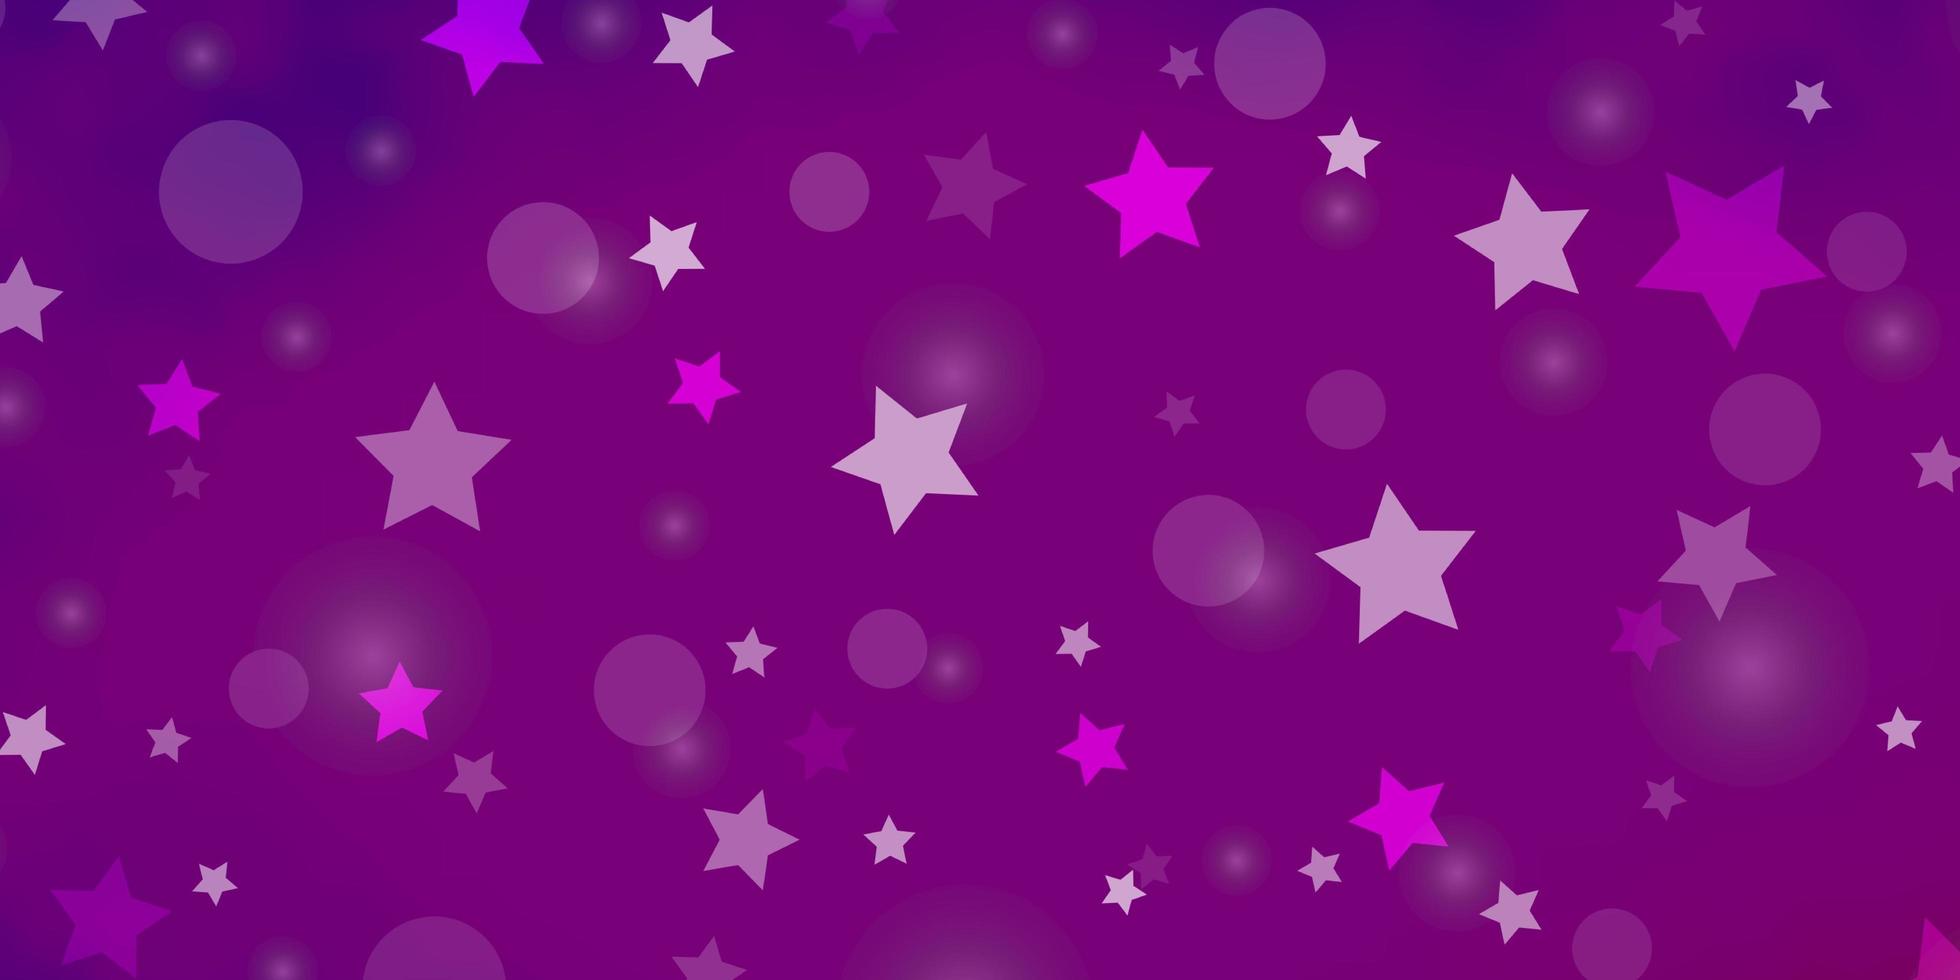 sfondo vettoriale rosa viola chiaro con cerchi illustrazione di stelle con set di sfere colorate astratte motivo a stelle per sfondi in tessuto alla moda